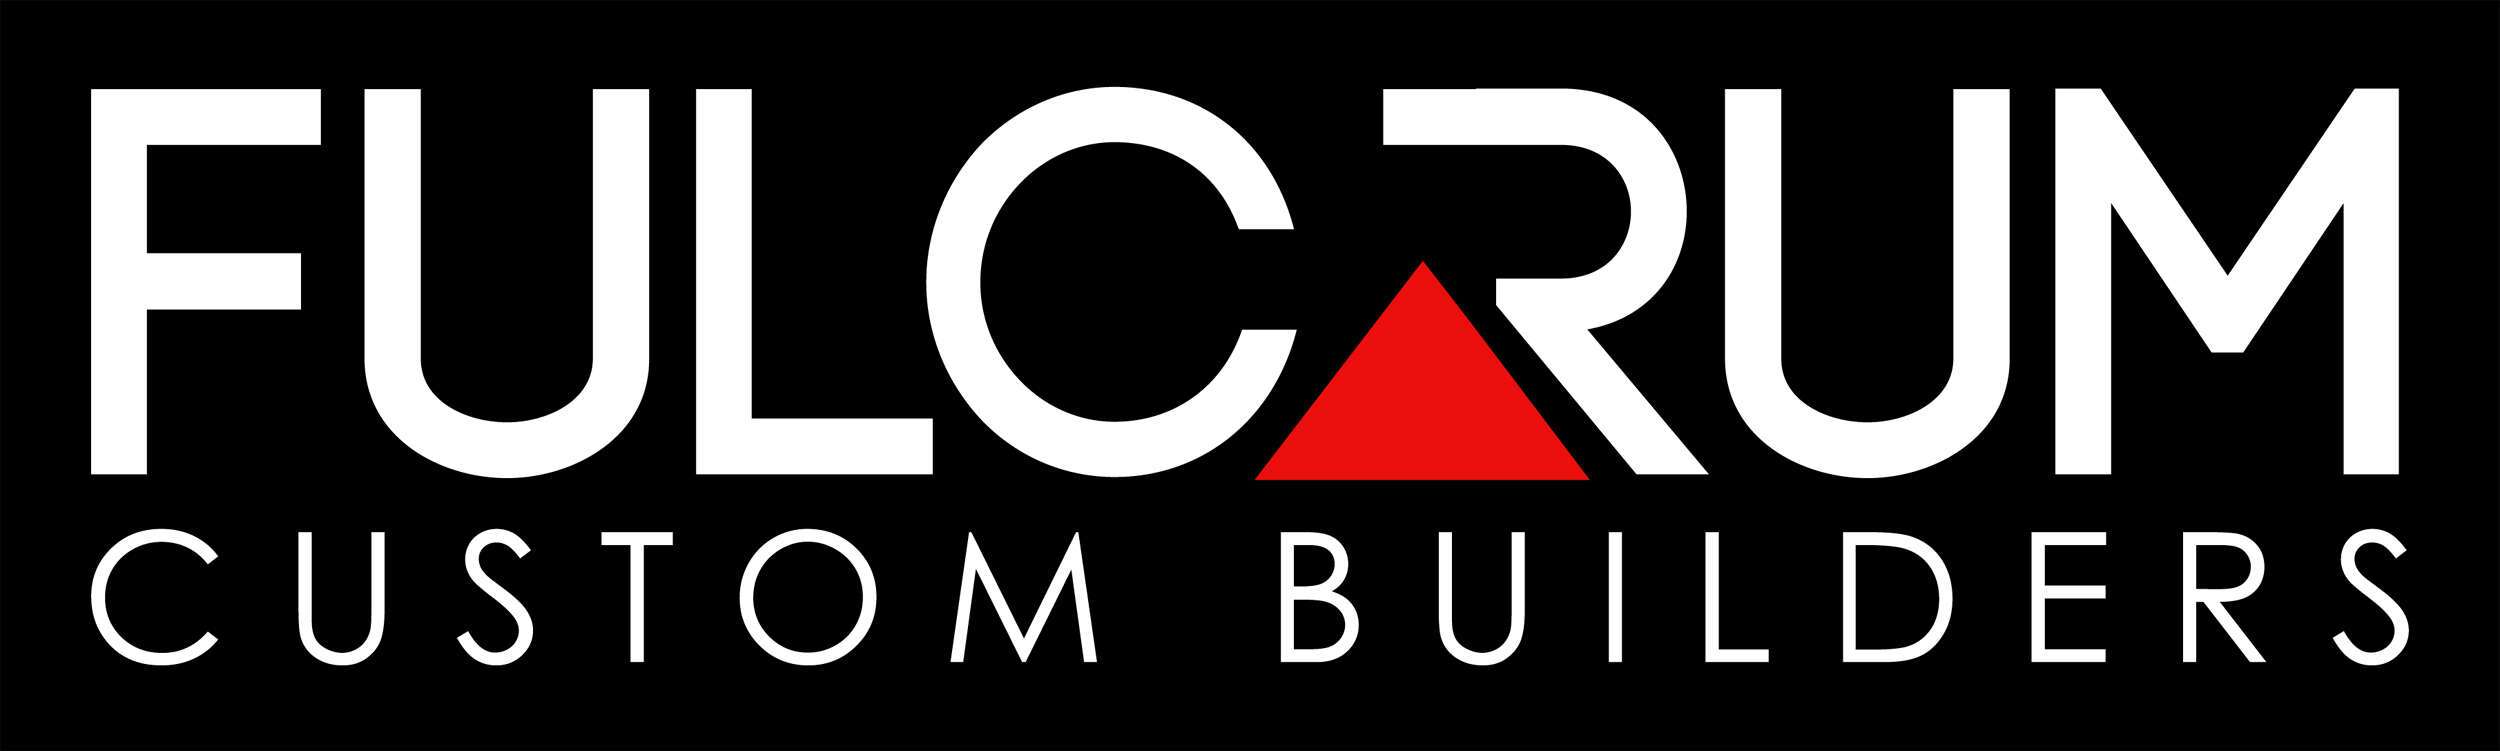 Fulcrum Custom Builders